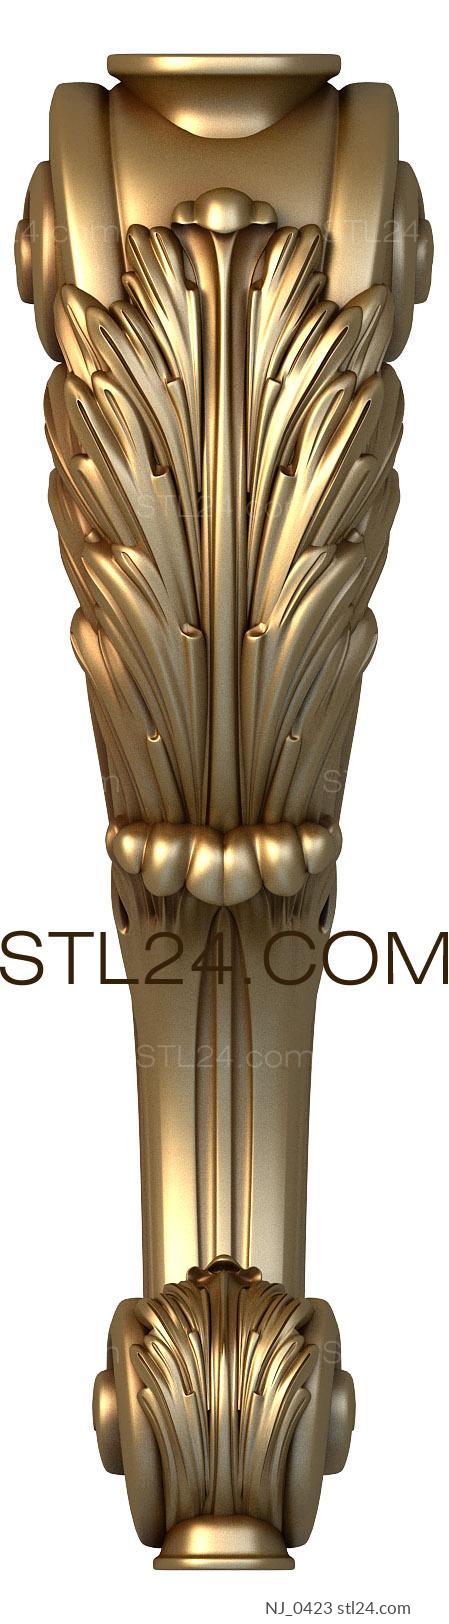 Ножки (NJ_0423) 3D модель для ЧПУ станка